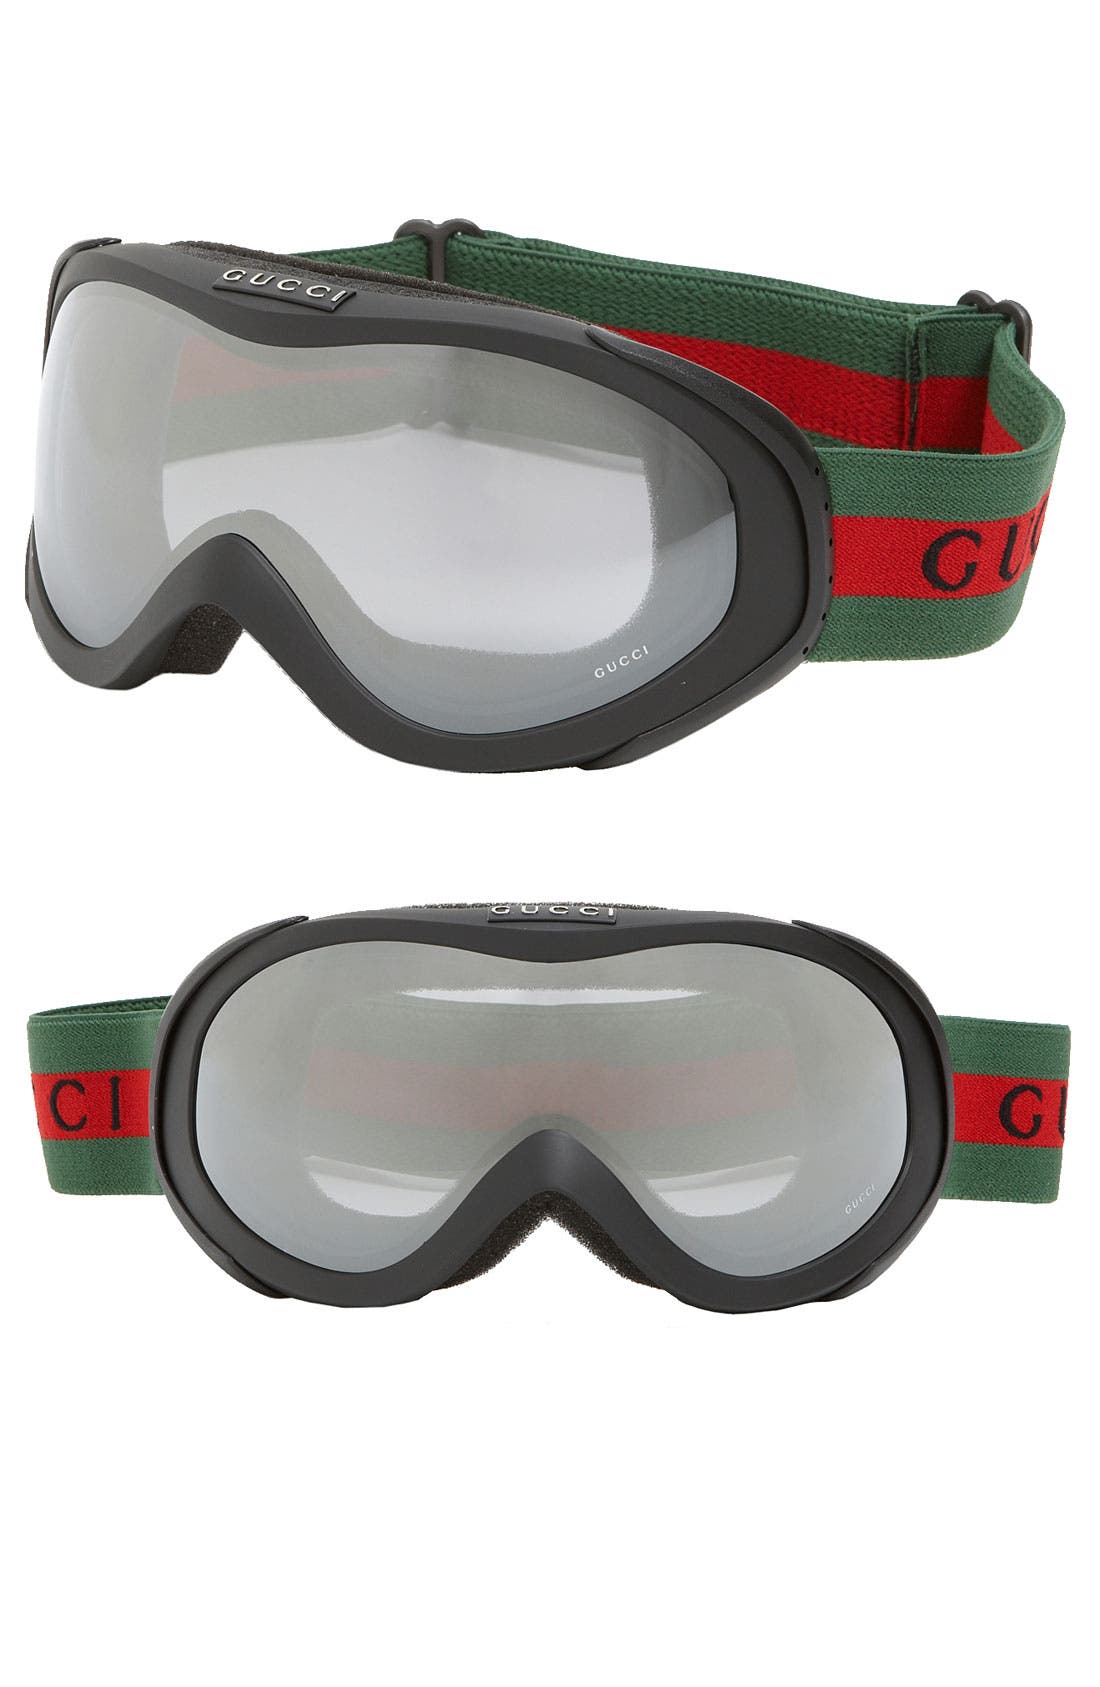 gucci ski goggles price, OFF 70 